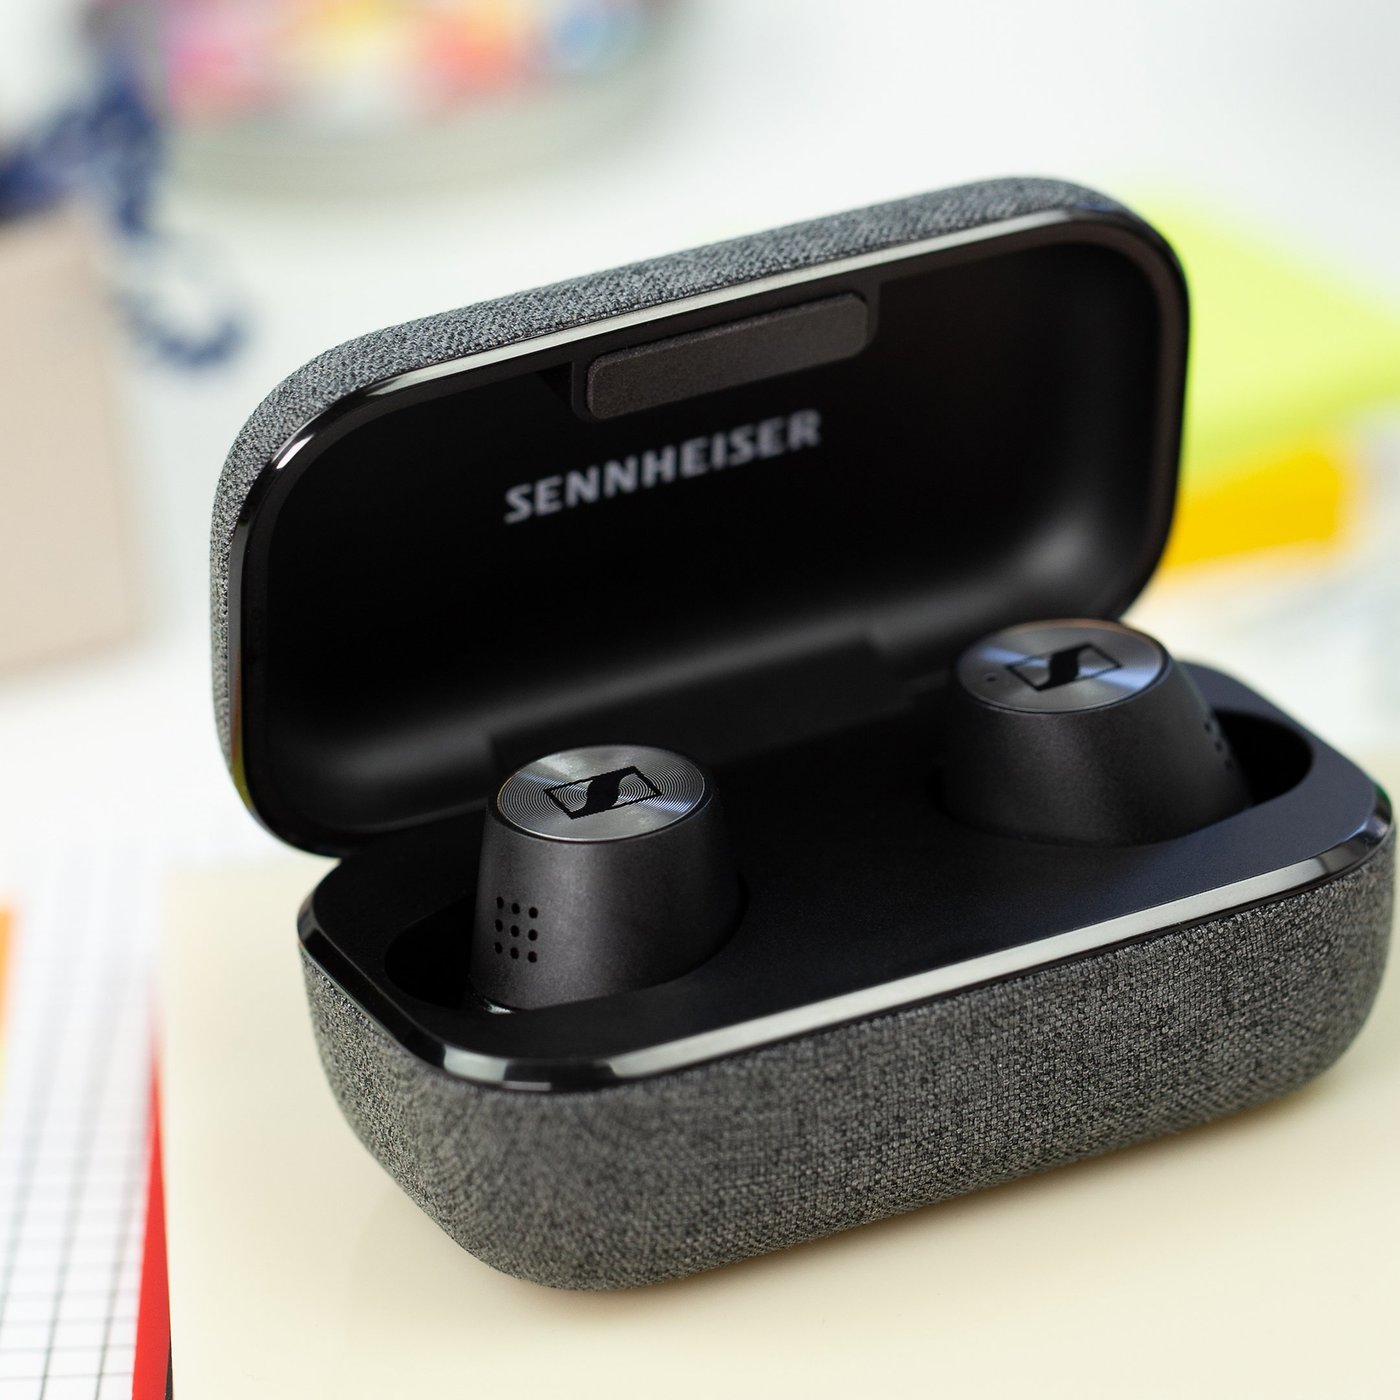 Sennheiser Momentum True Wireless 2 review: German engineering 